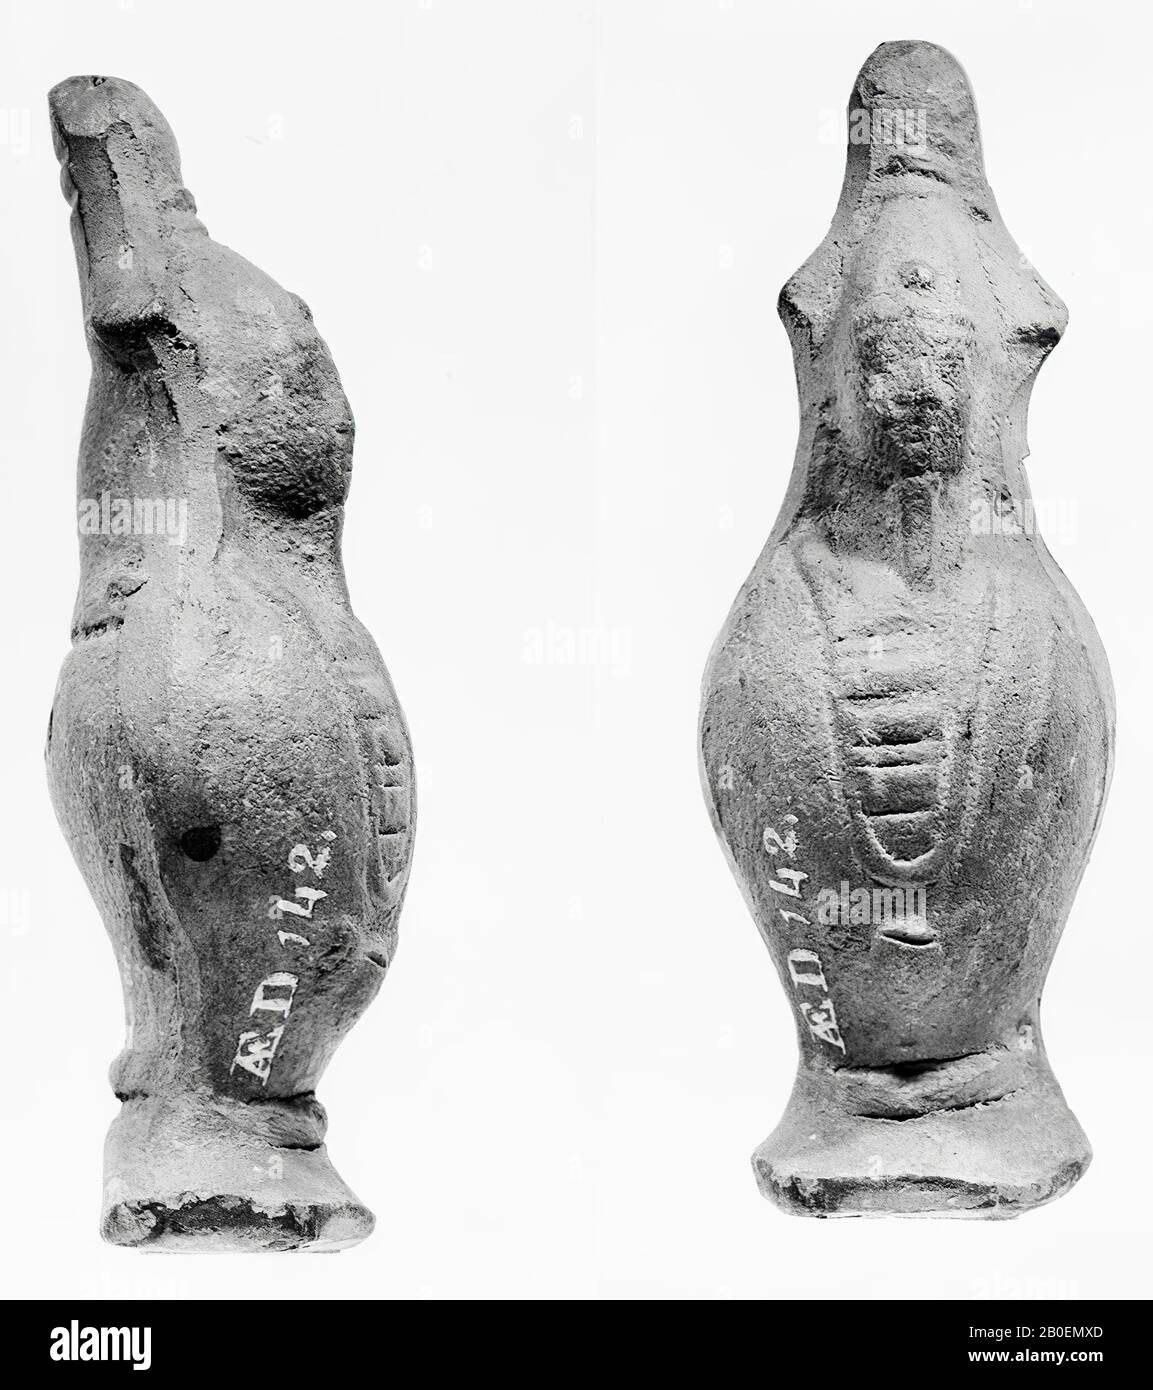 Osiride, Canopus, statua votiva, terracotta, 8,1 cm, periodo greco-romano, epoca imperiale romana, Egitto Foto Stock